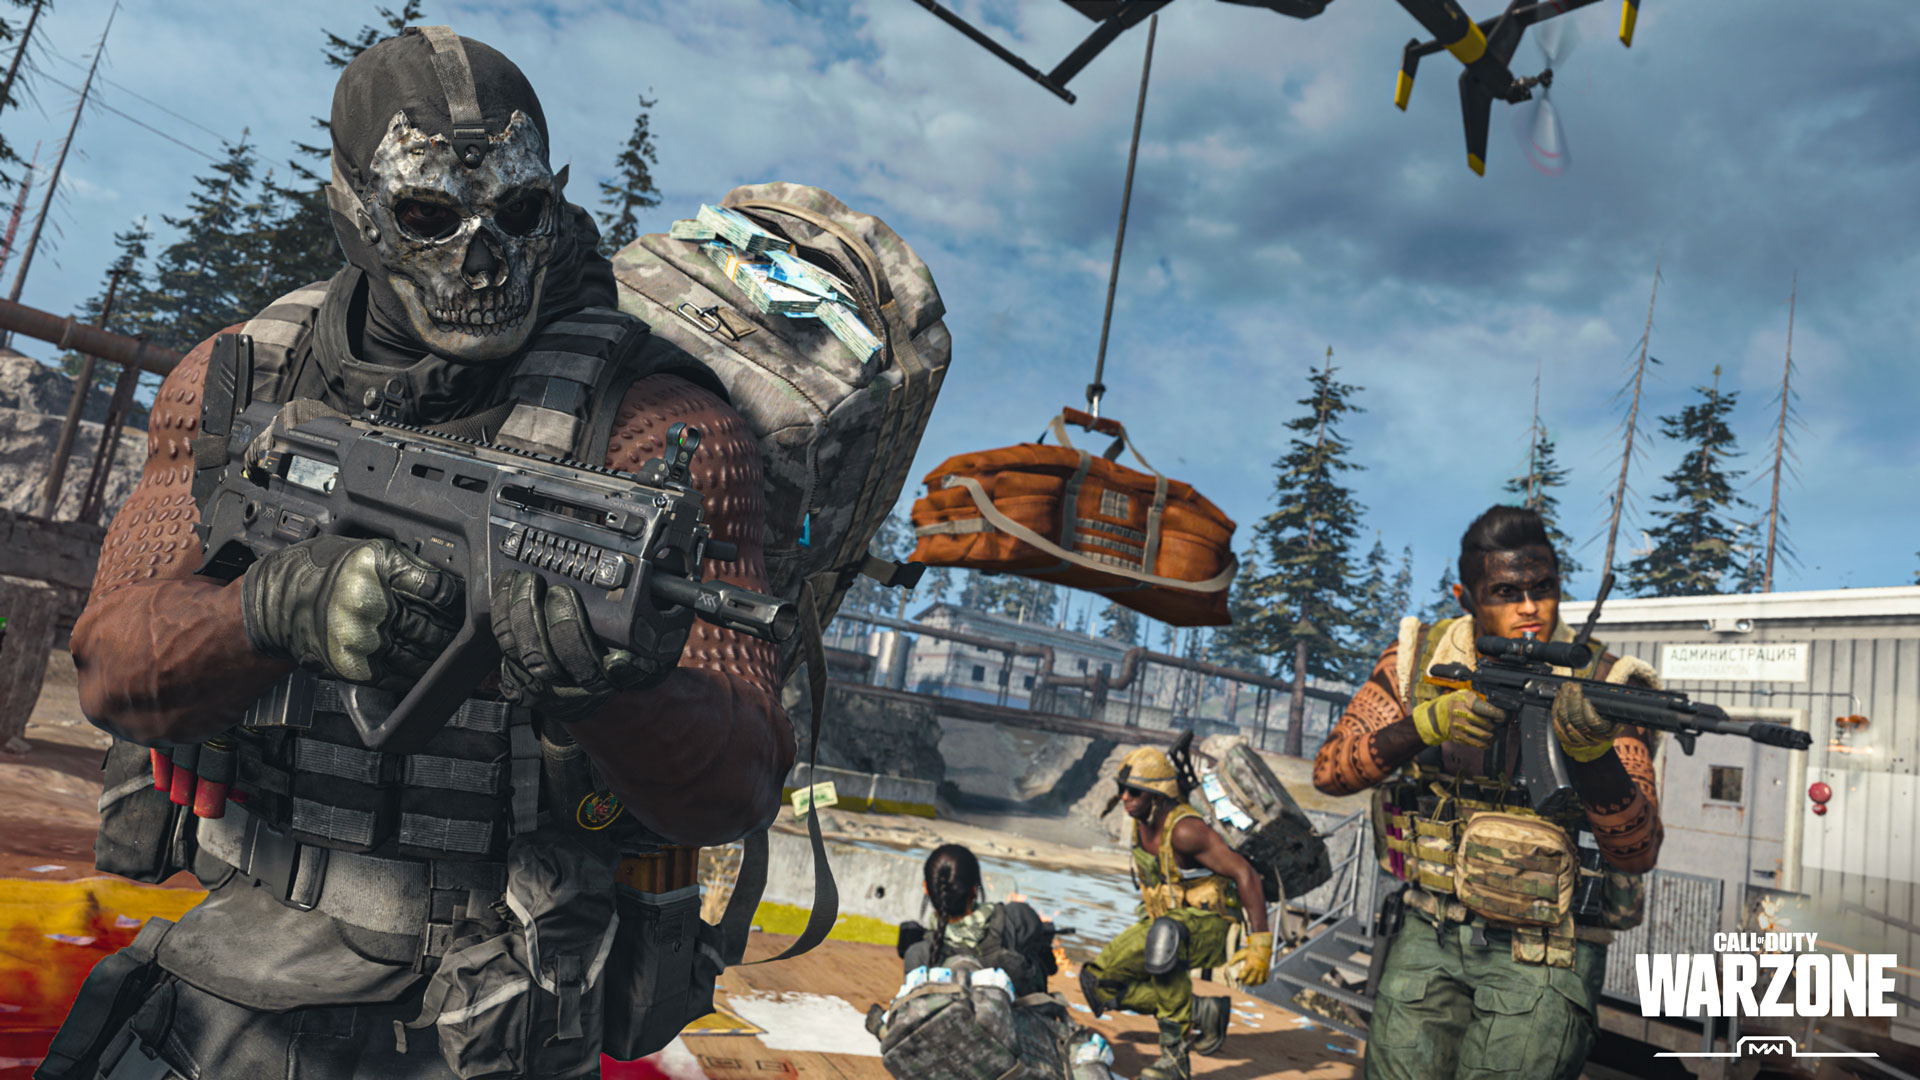 Call of Duty Warzone 2.0: veja requisitos e gameplay do FPS gratuito